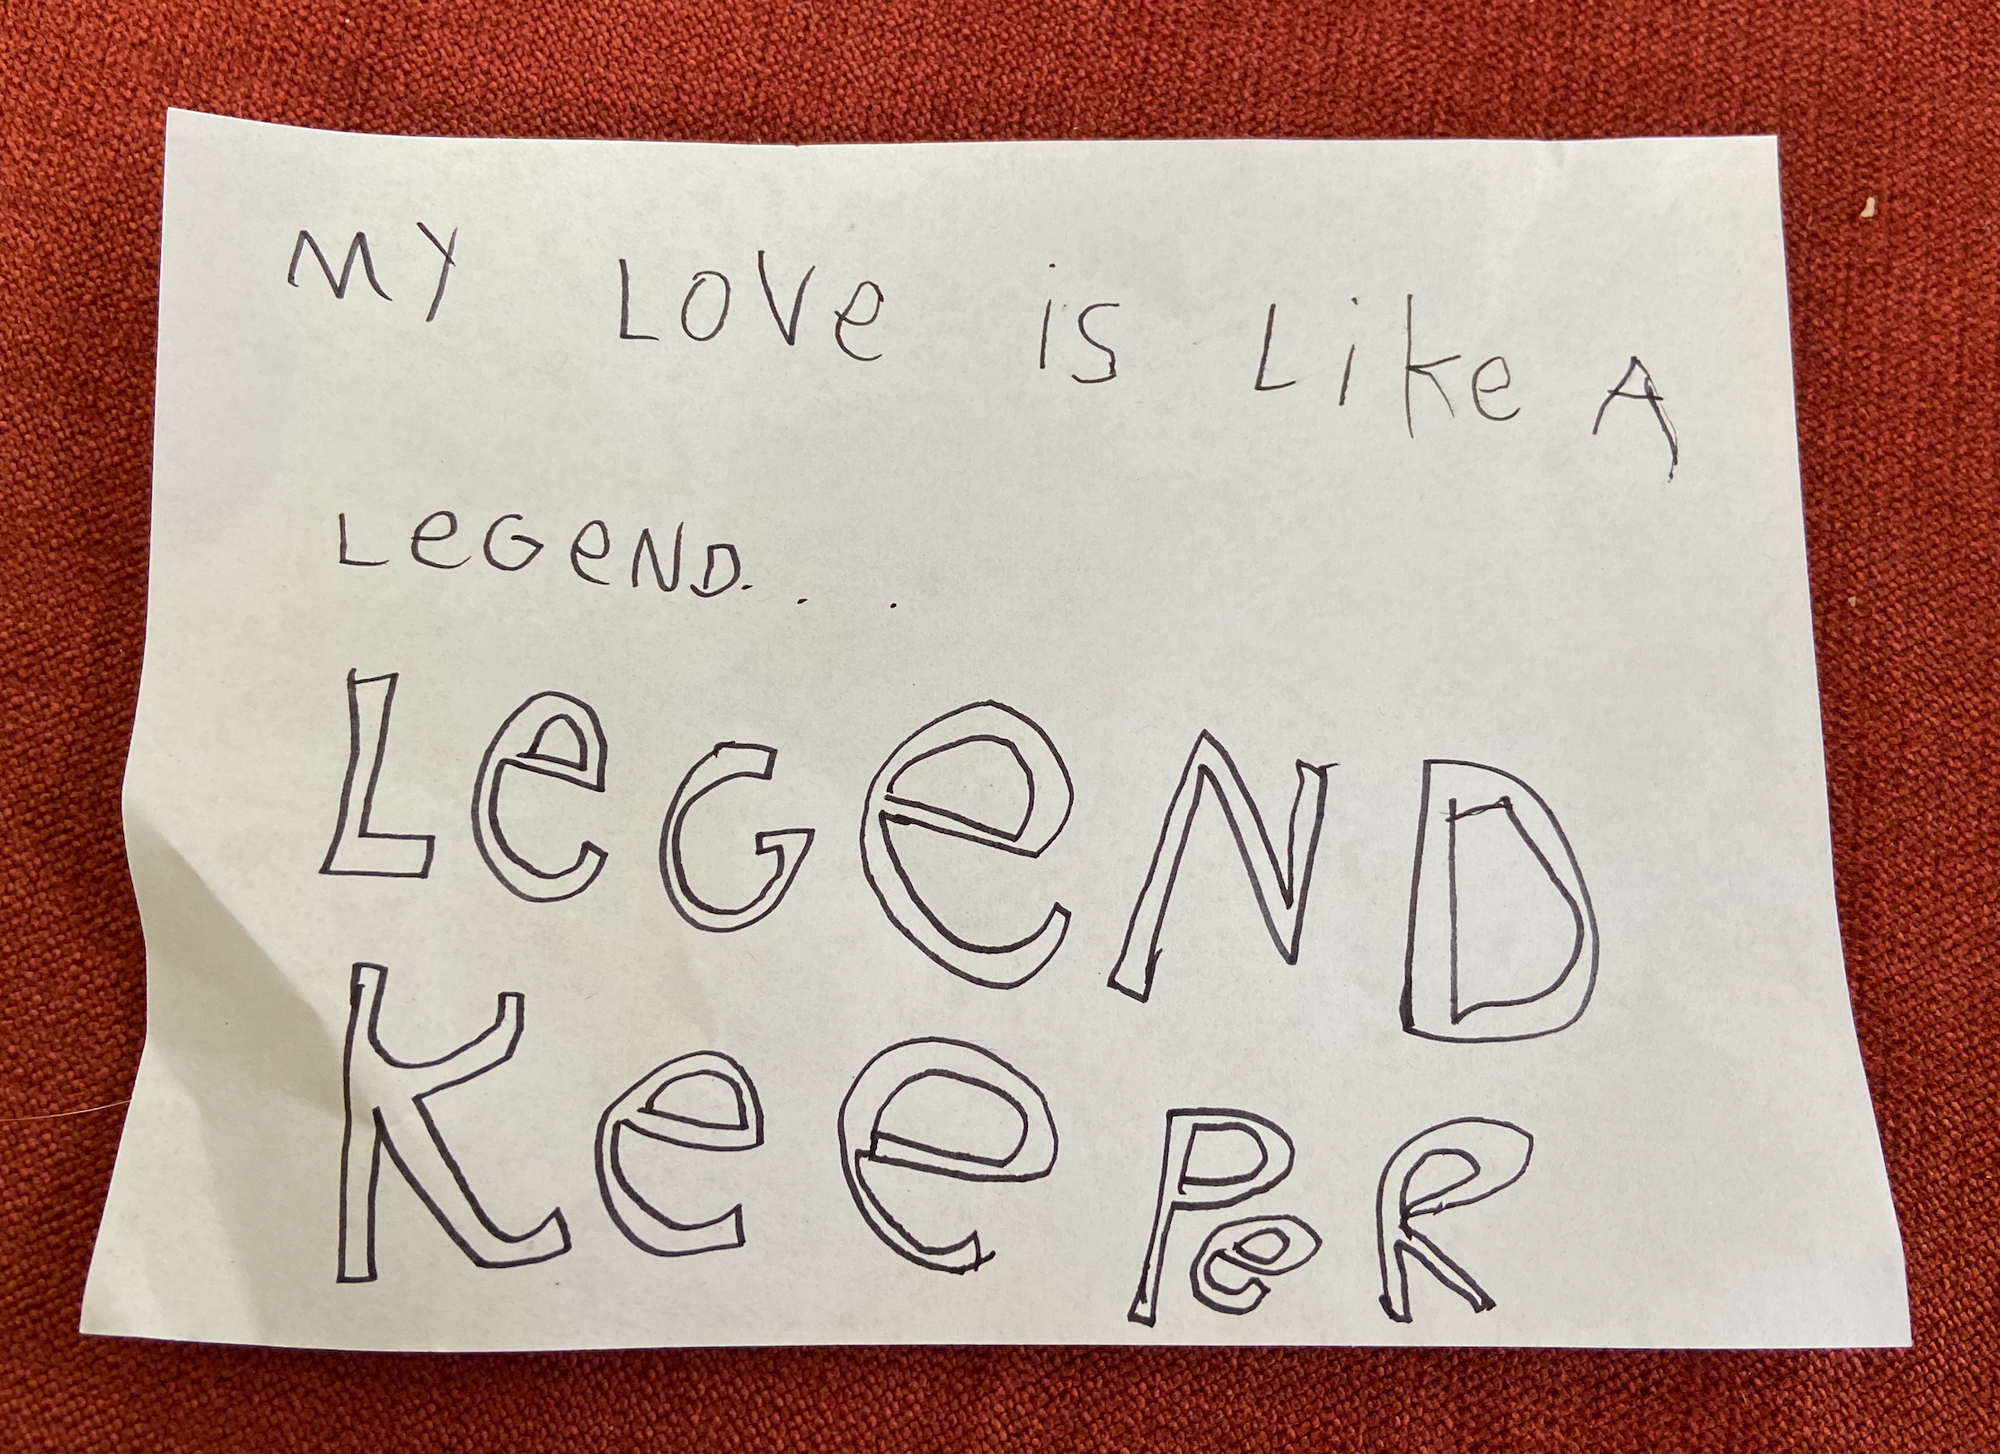 My love is like a legend. LegendKeeper.